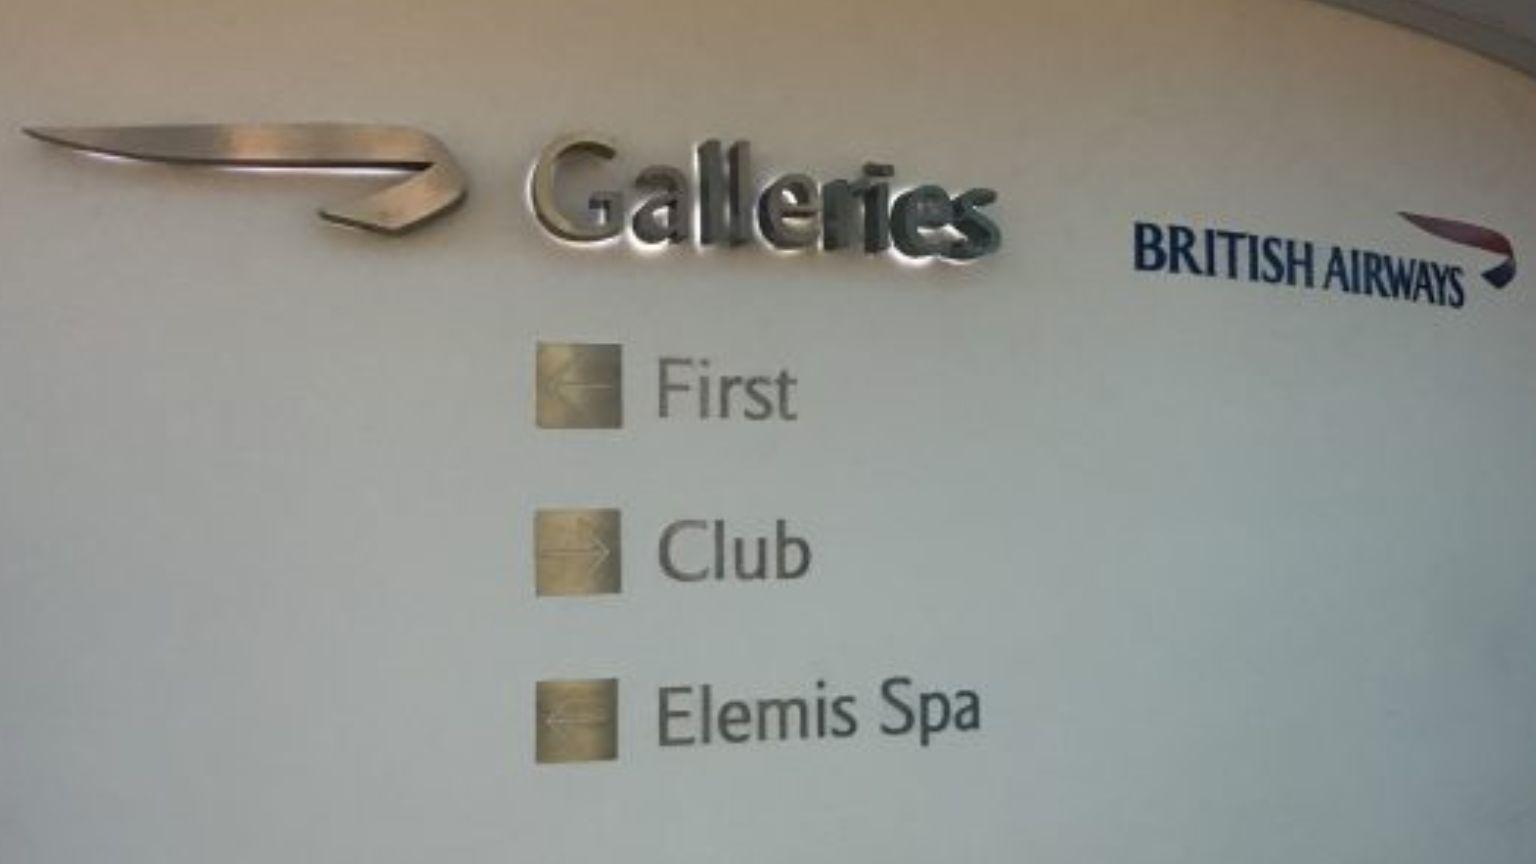 British Airways Galleries Club Lounge, Terminal 3